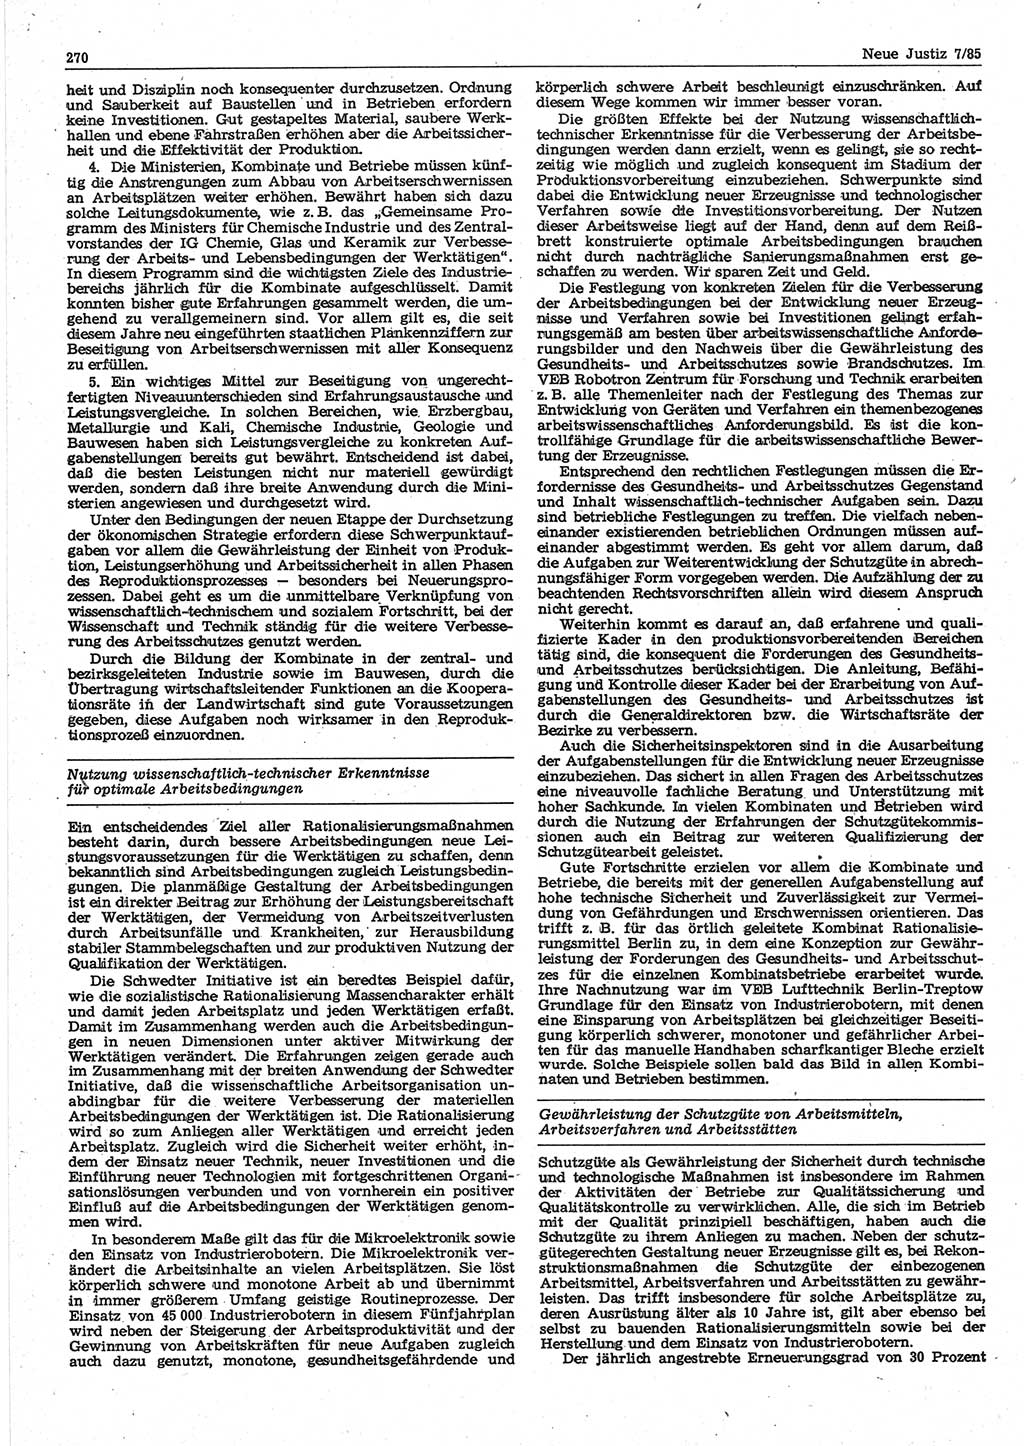 Neue Justiz (NJ), Zeitschrift für sozialistisches Recht und Gesetzlichkeit [Deutsche Demokratische Republik (DDR)], 39. Jahrgang 1985, Seite 270 (NJ DDR 1985, S. 270)